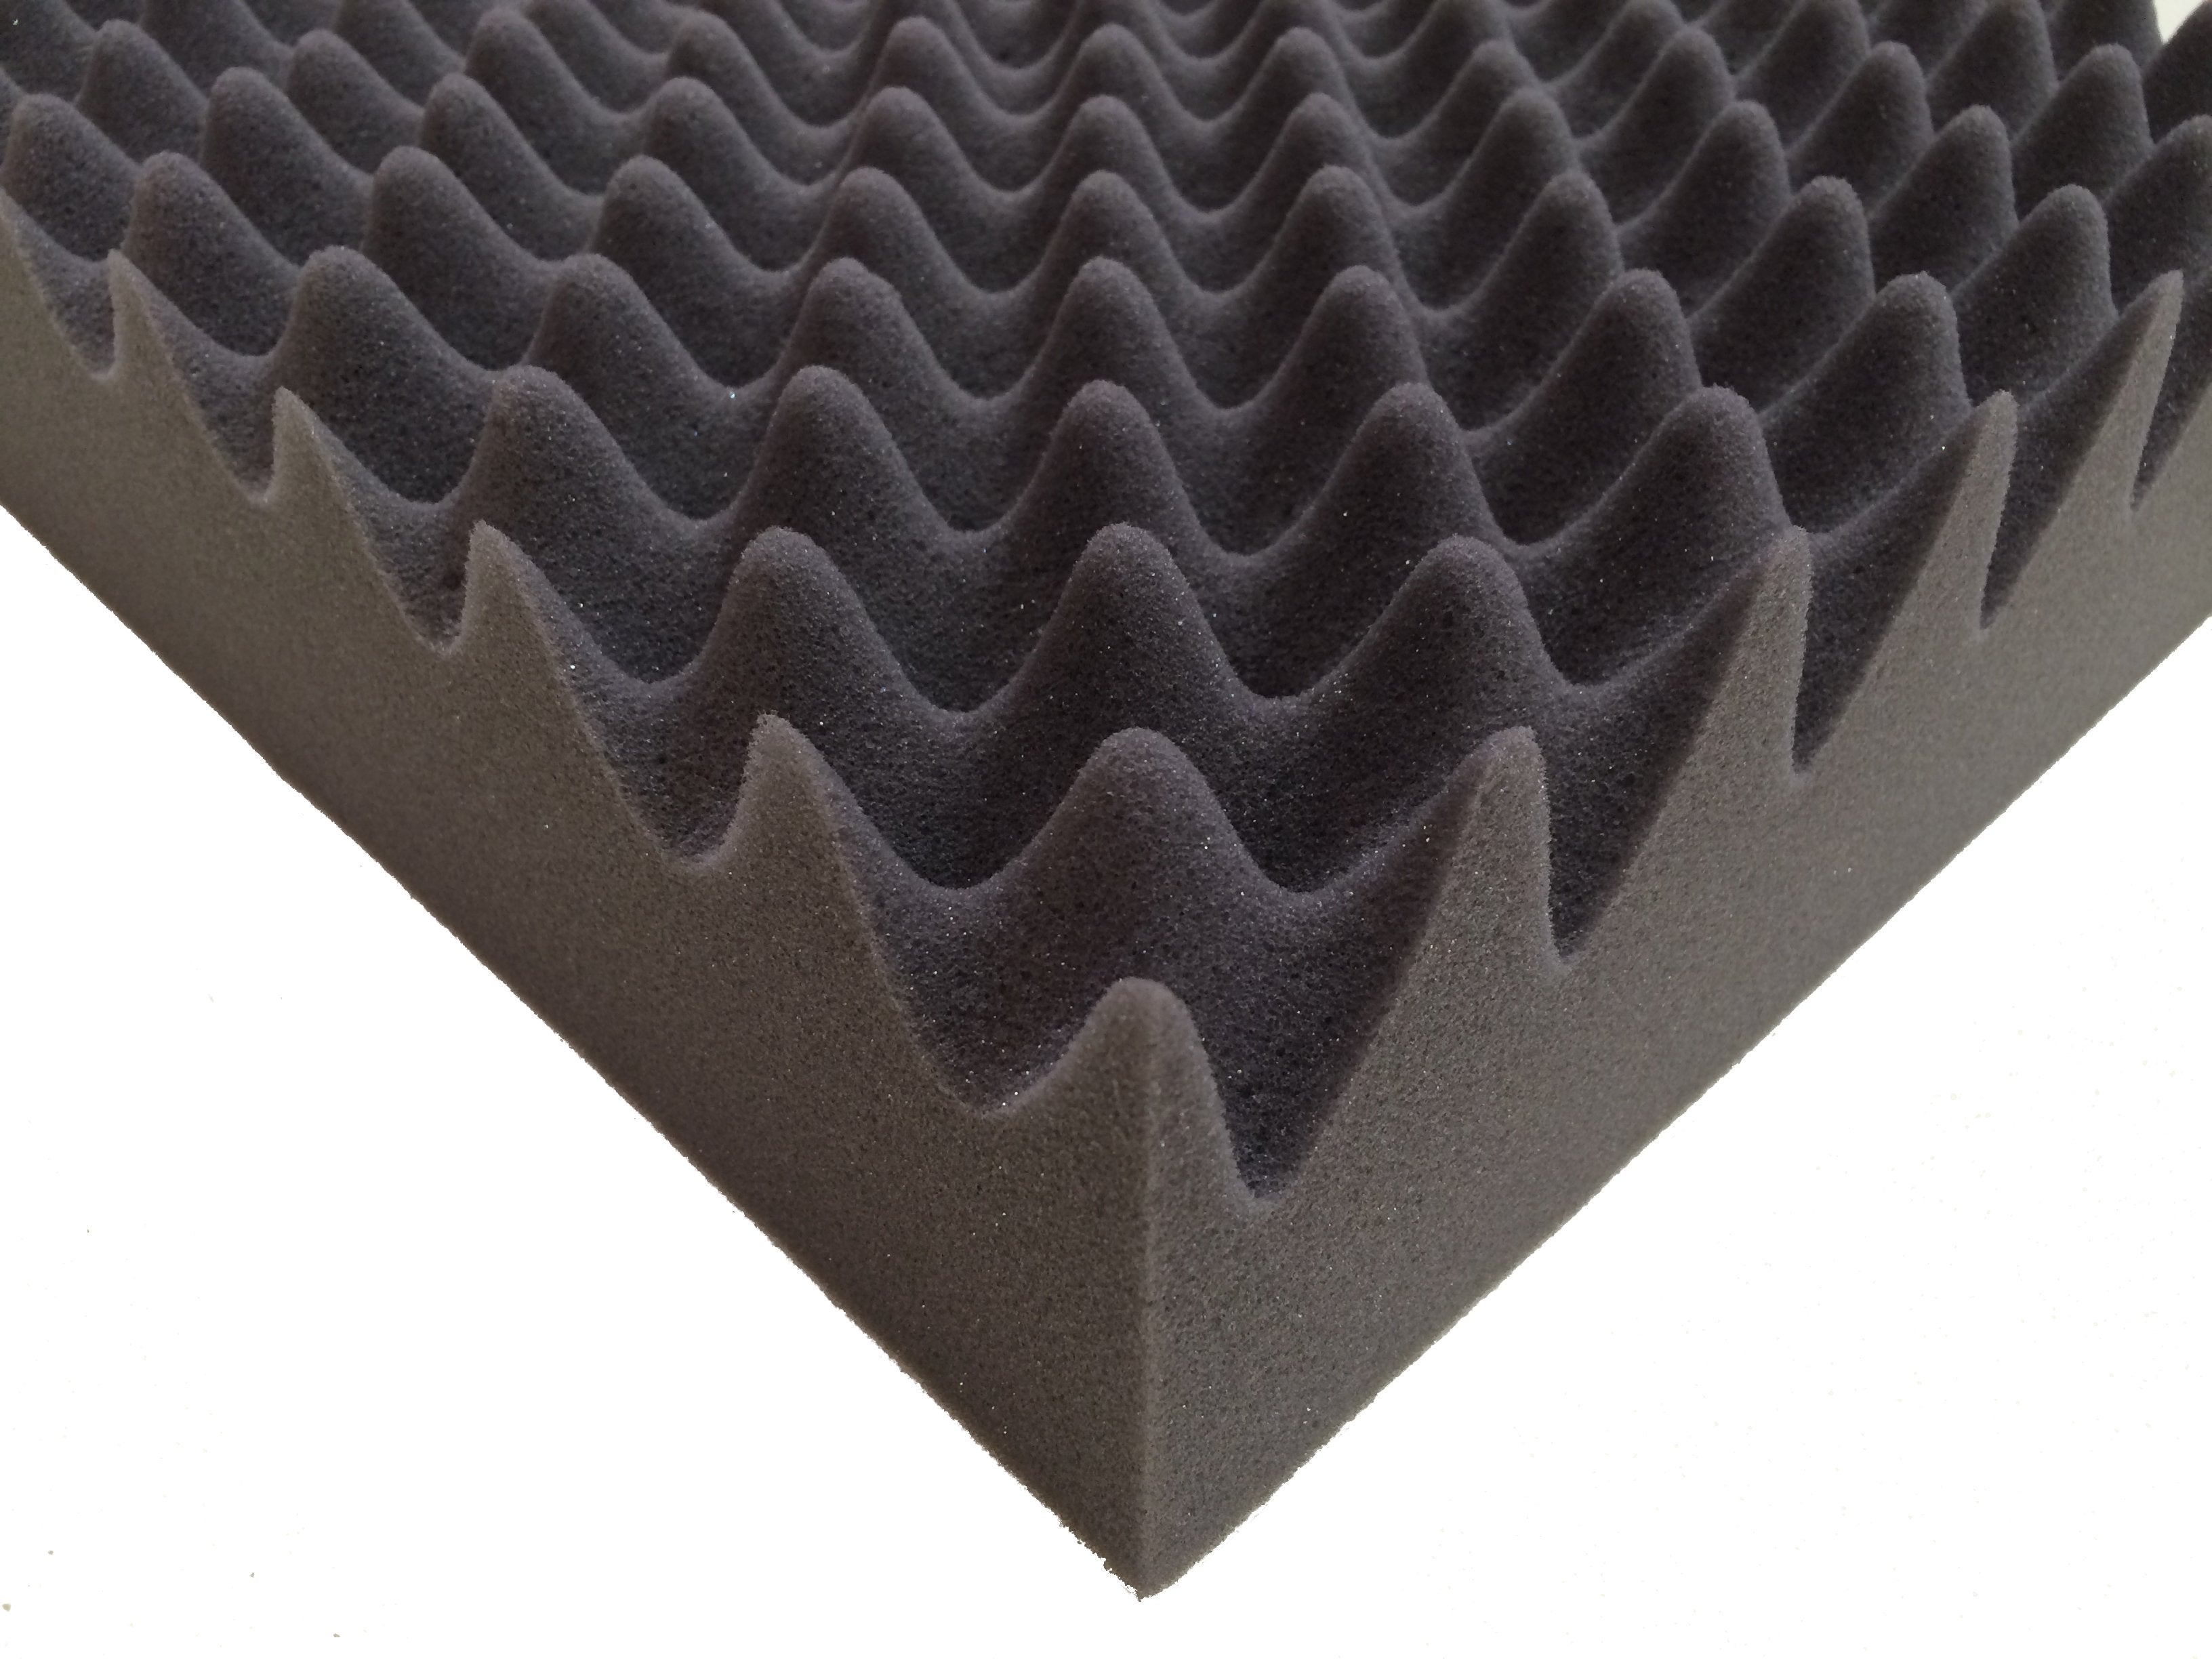 F.A.T. PRO 30" Acoustic Studio Foam Tile Kit - Advanced Acoustics